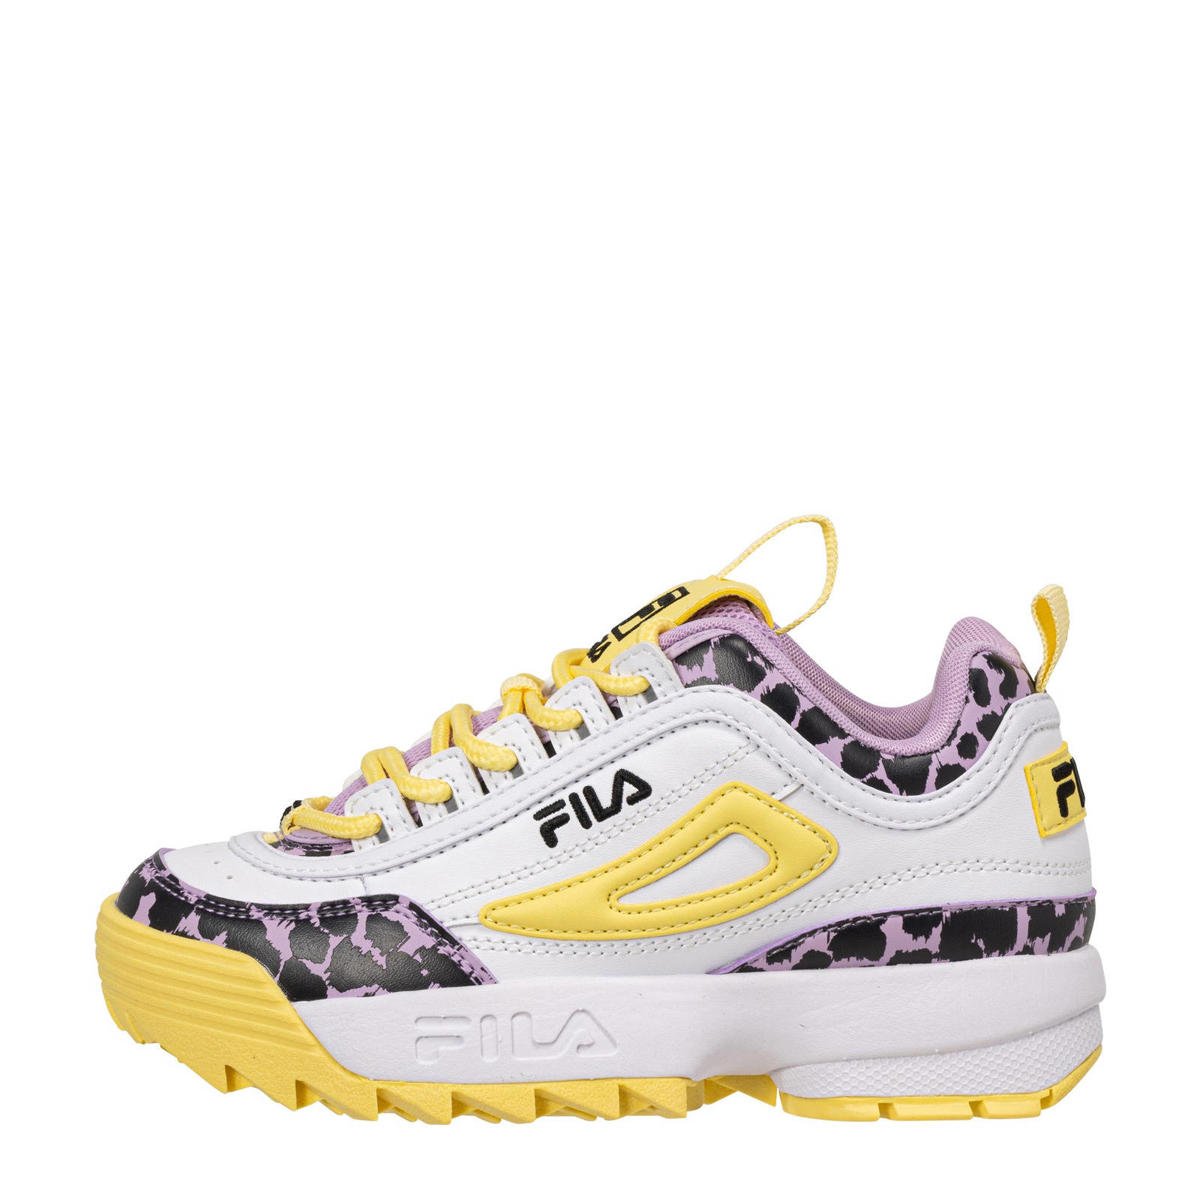 Blozend Detector taart Fila Disruptor F sneakers wit/geel/roze | kleertjes.com